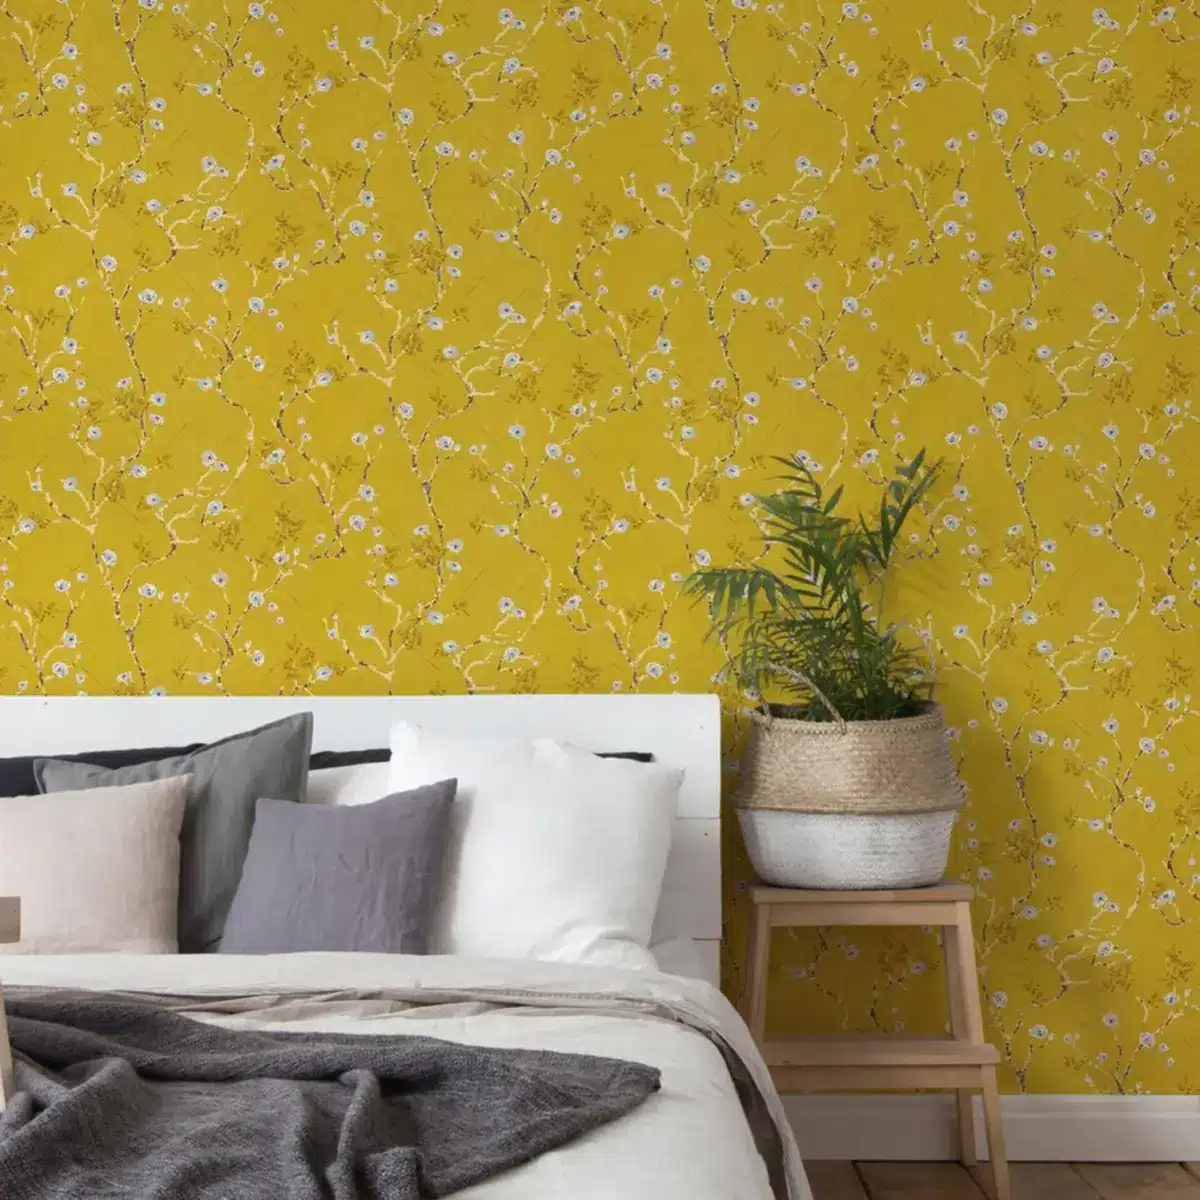 Le guide ultime pour choisir et installer un papier peint jaune canard dans votre chambre